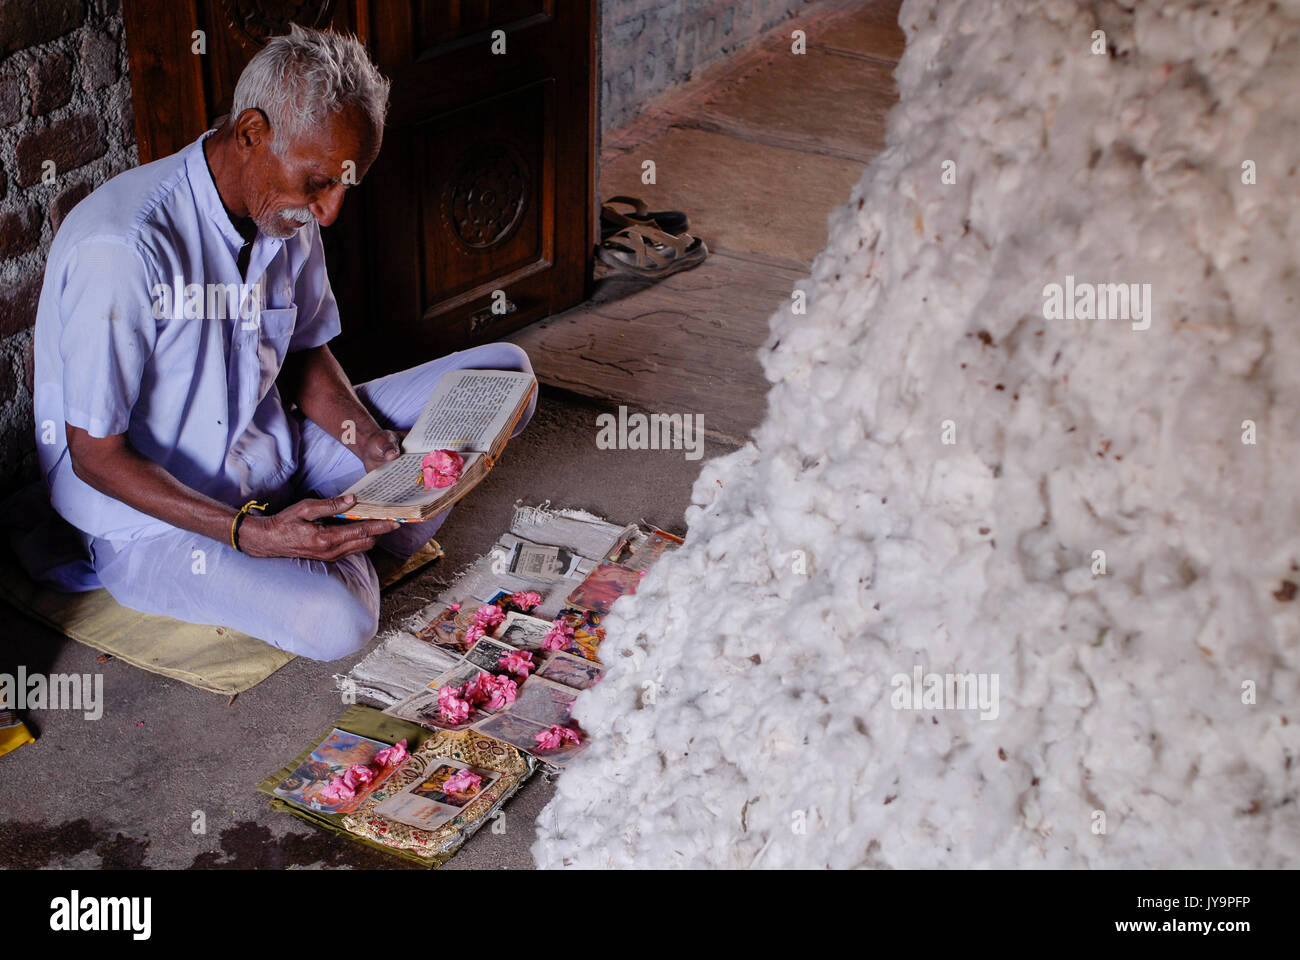 La India de Madhya Pradesh , proyecto de algodón orgánico bioRe en Kasrawad , algodón agricultor tener una oración al lado de su rendimiento de algodón en casa / INDIEN Madhya Pradesh , bioRe Projekt fuer biodynamischen Anbau von Baumwolle en Kasrawad, Baumwollfarmer bei einem Gebet neben cerquero Baumwollernte zu Hause Foto de stock